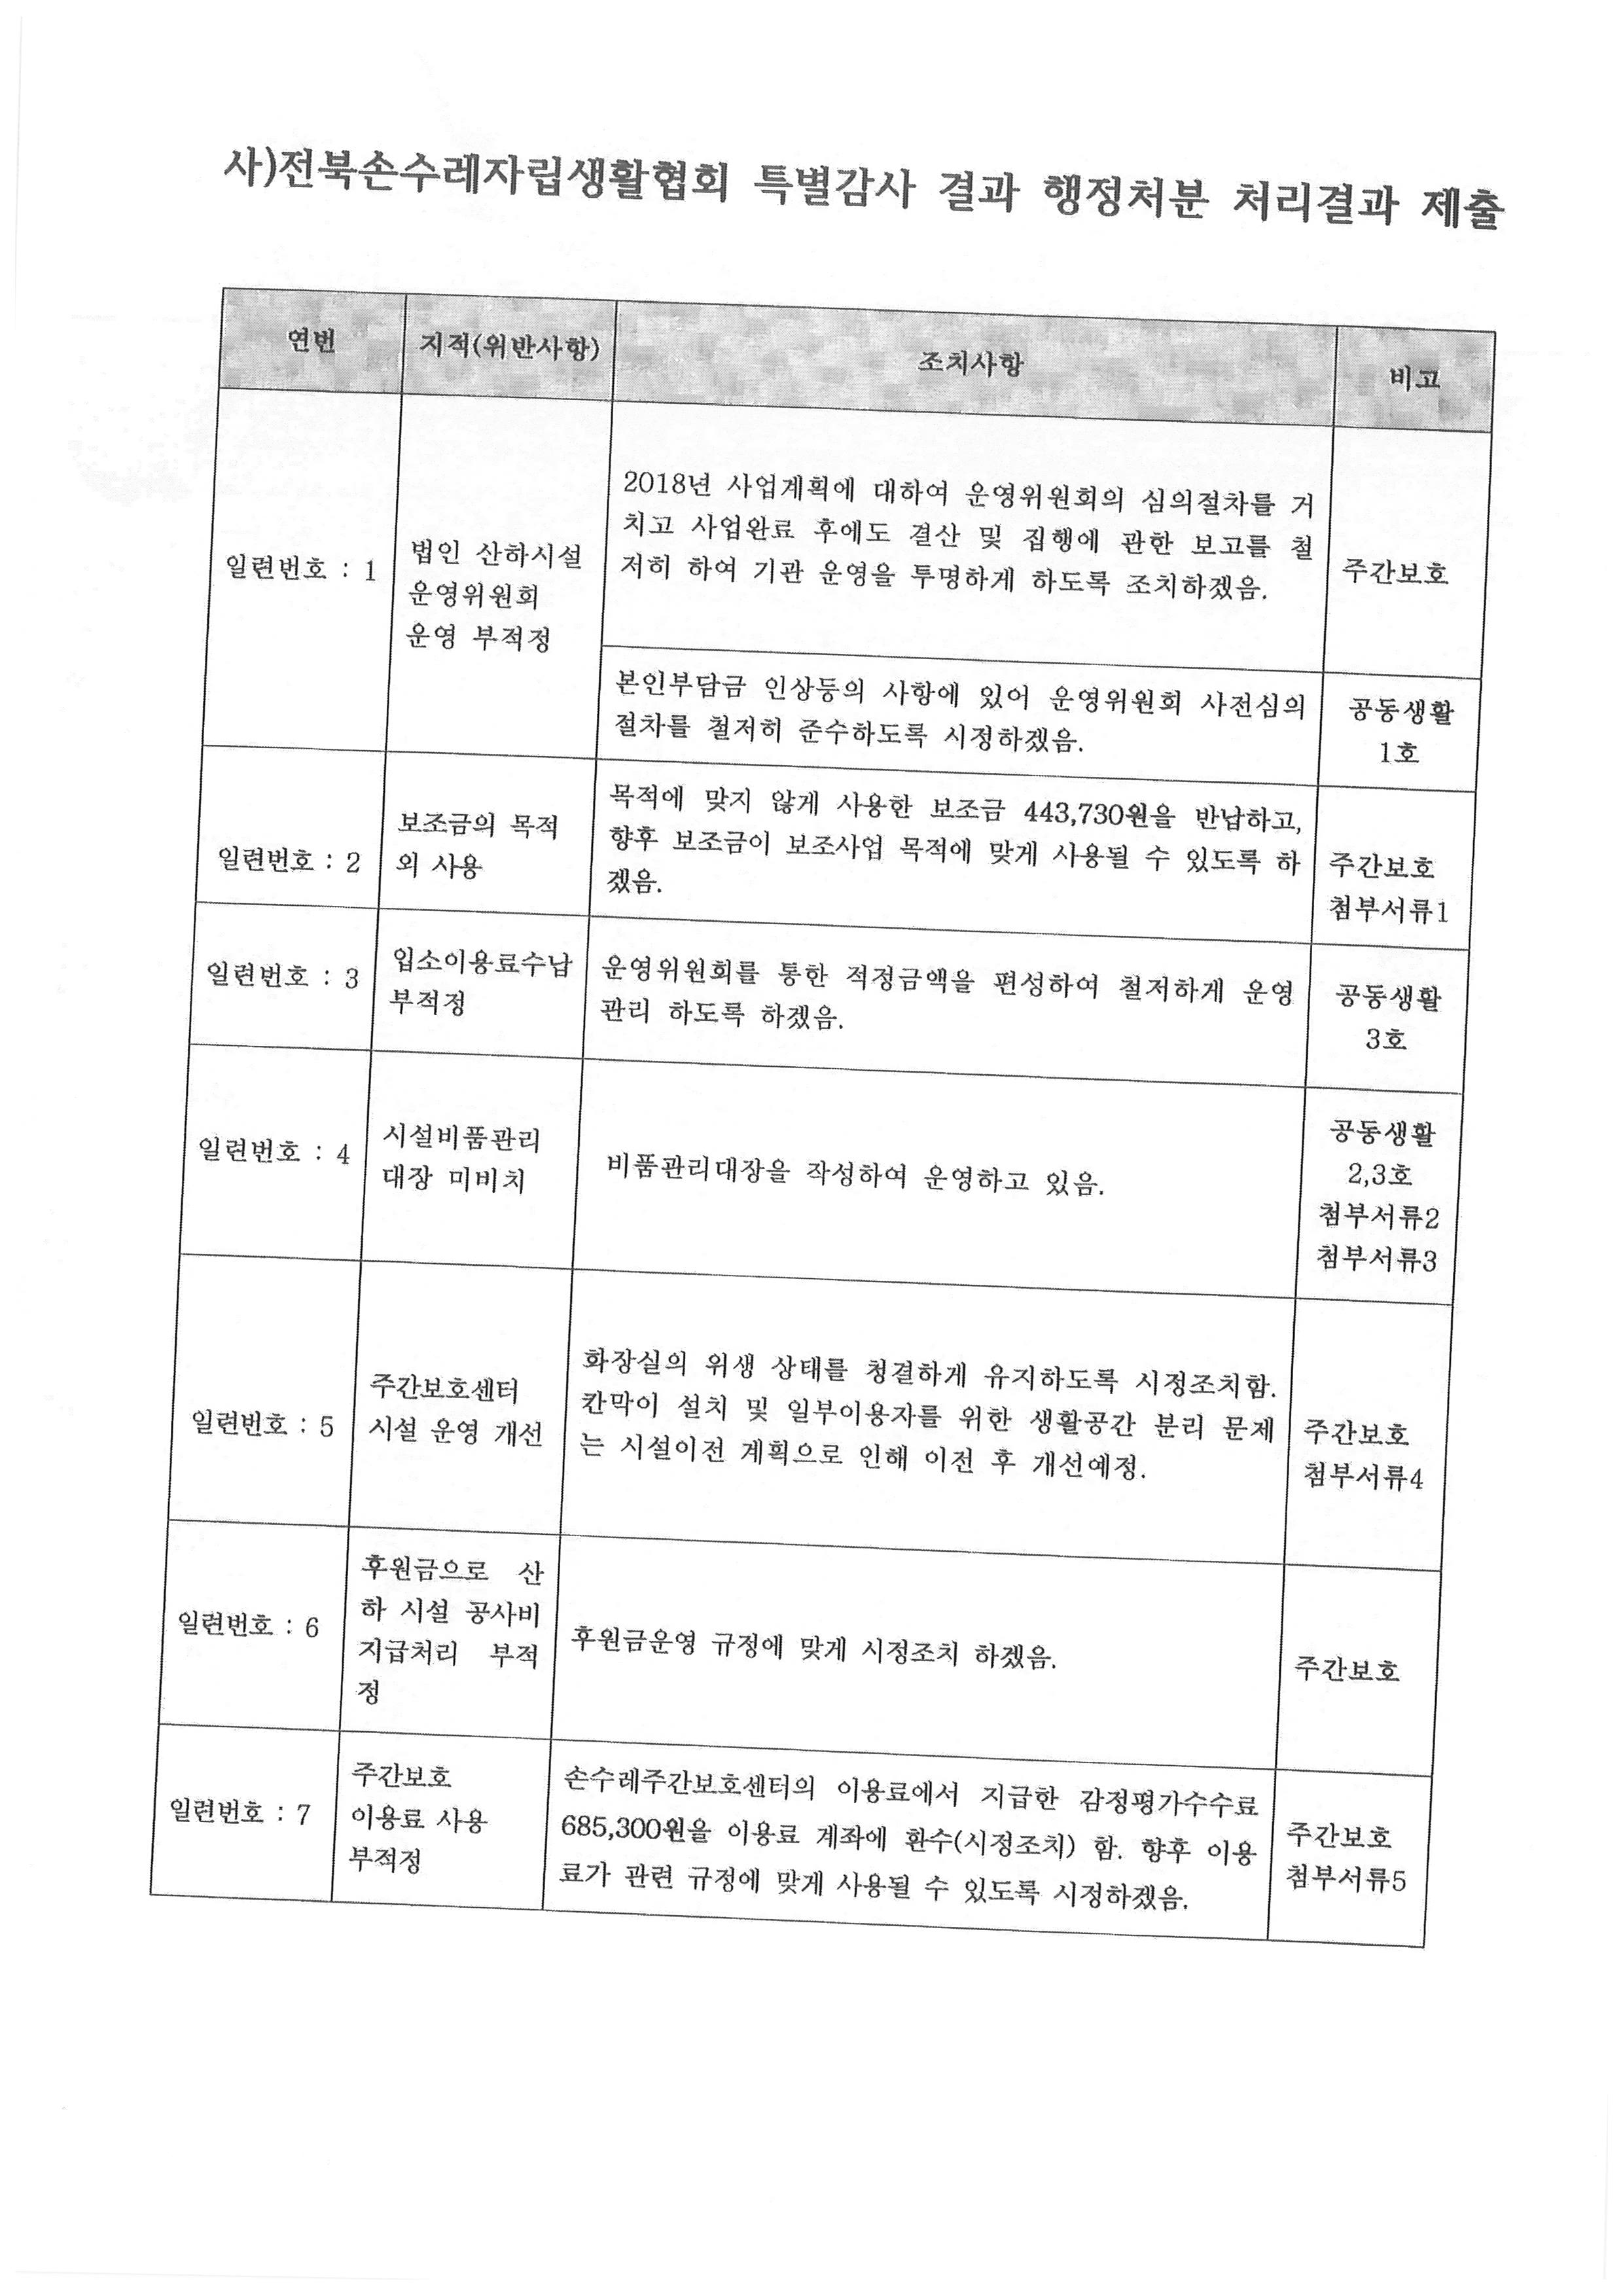 3 전북장애인손수레자립생활지원협회 특별감사 처분 처리결과 제출_페이지_2.jpg